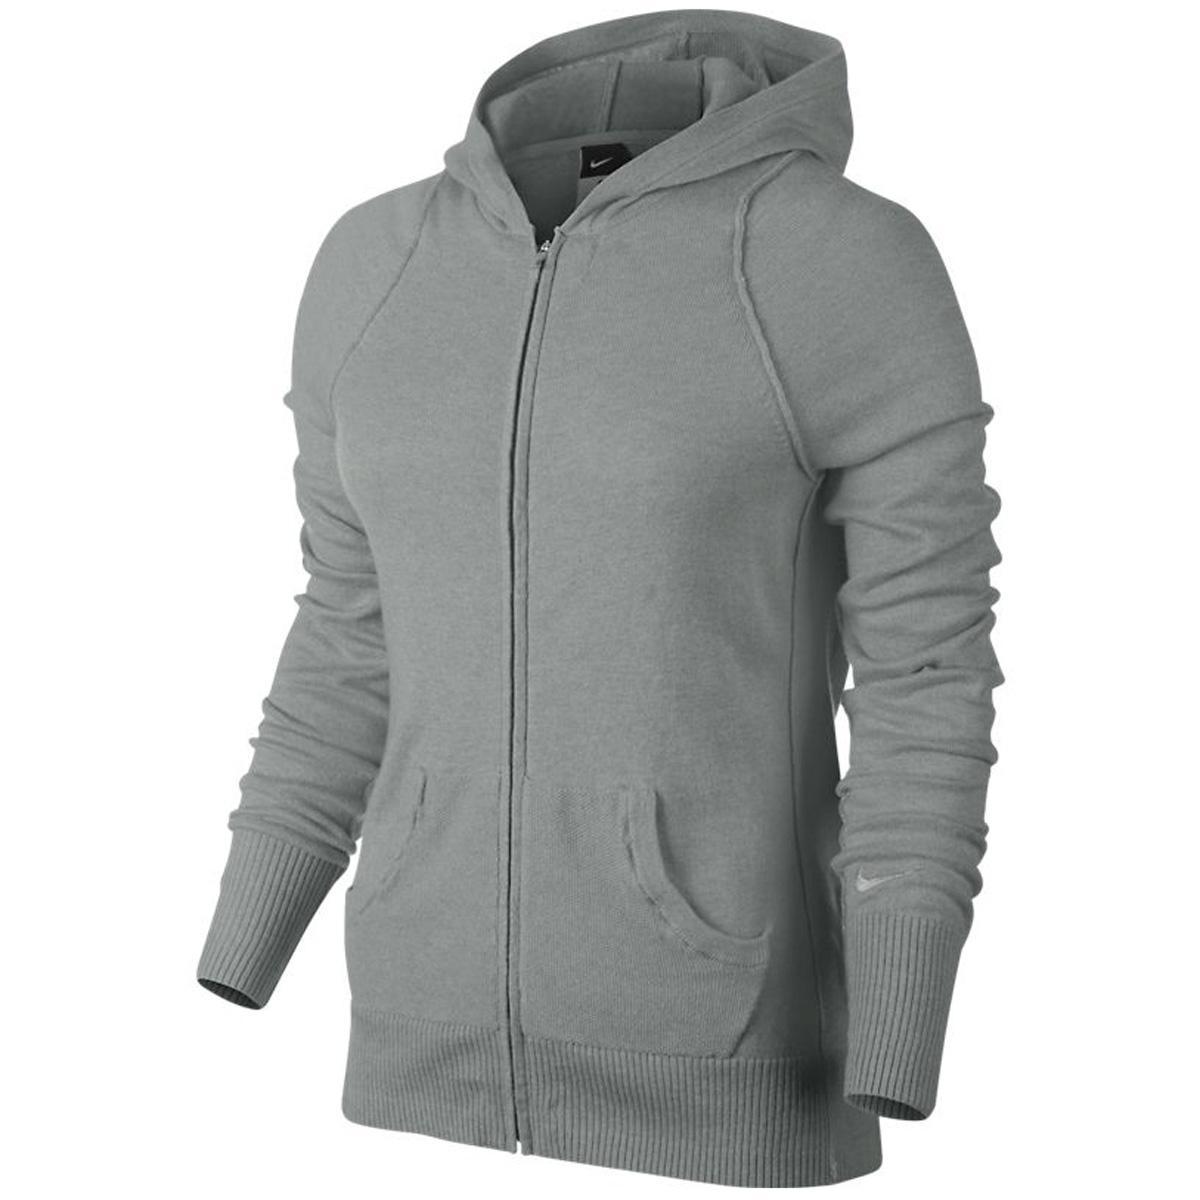 Nike Womens Knit Sweater Jacket - Medium Grey/Matte Silver - Tennisnuts.com